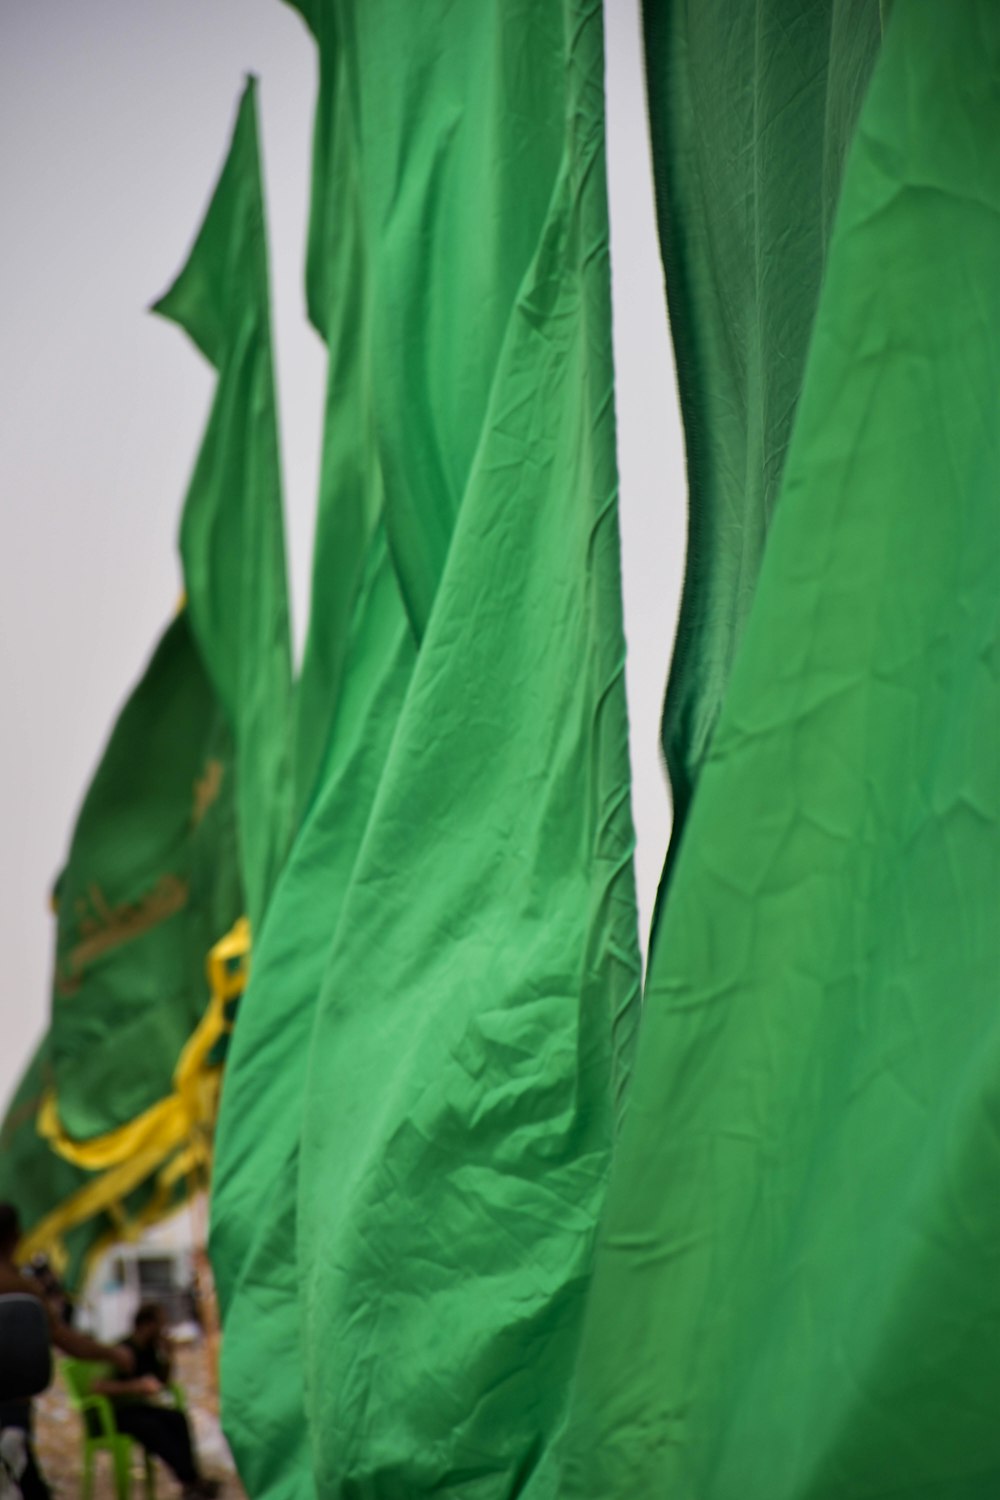 한 무리의 녹색 깃발이 바람에 휩싸입니다